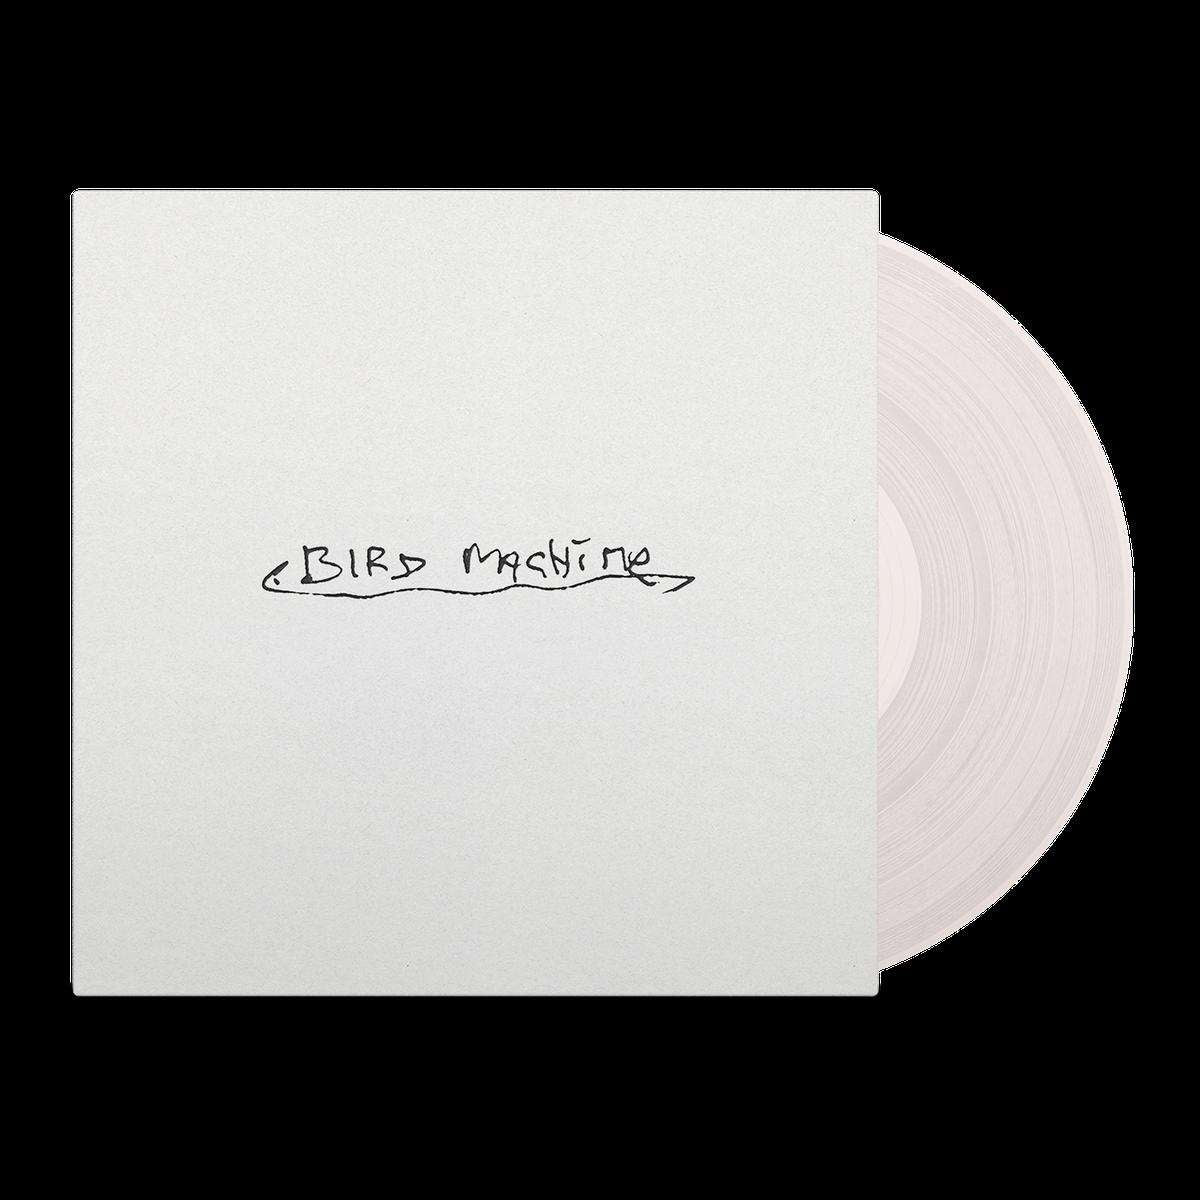 Sparklehorse: Bird Machine (Limited Edition) (Clear Vinyl) - 33RPM